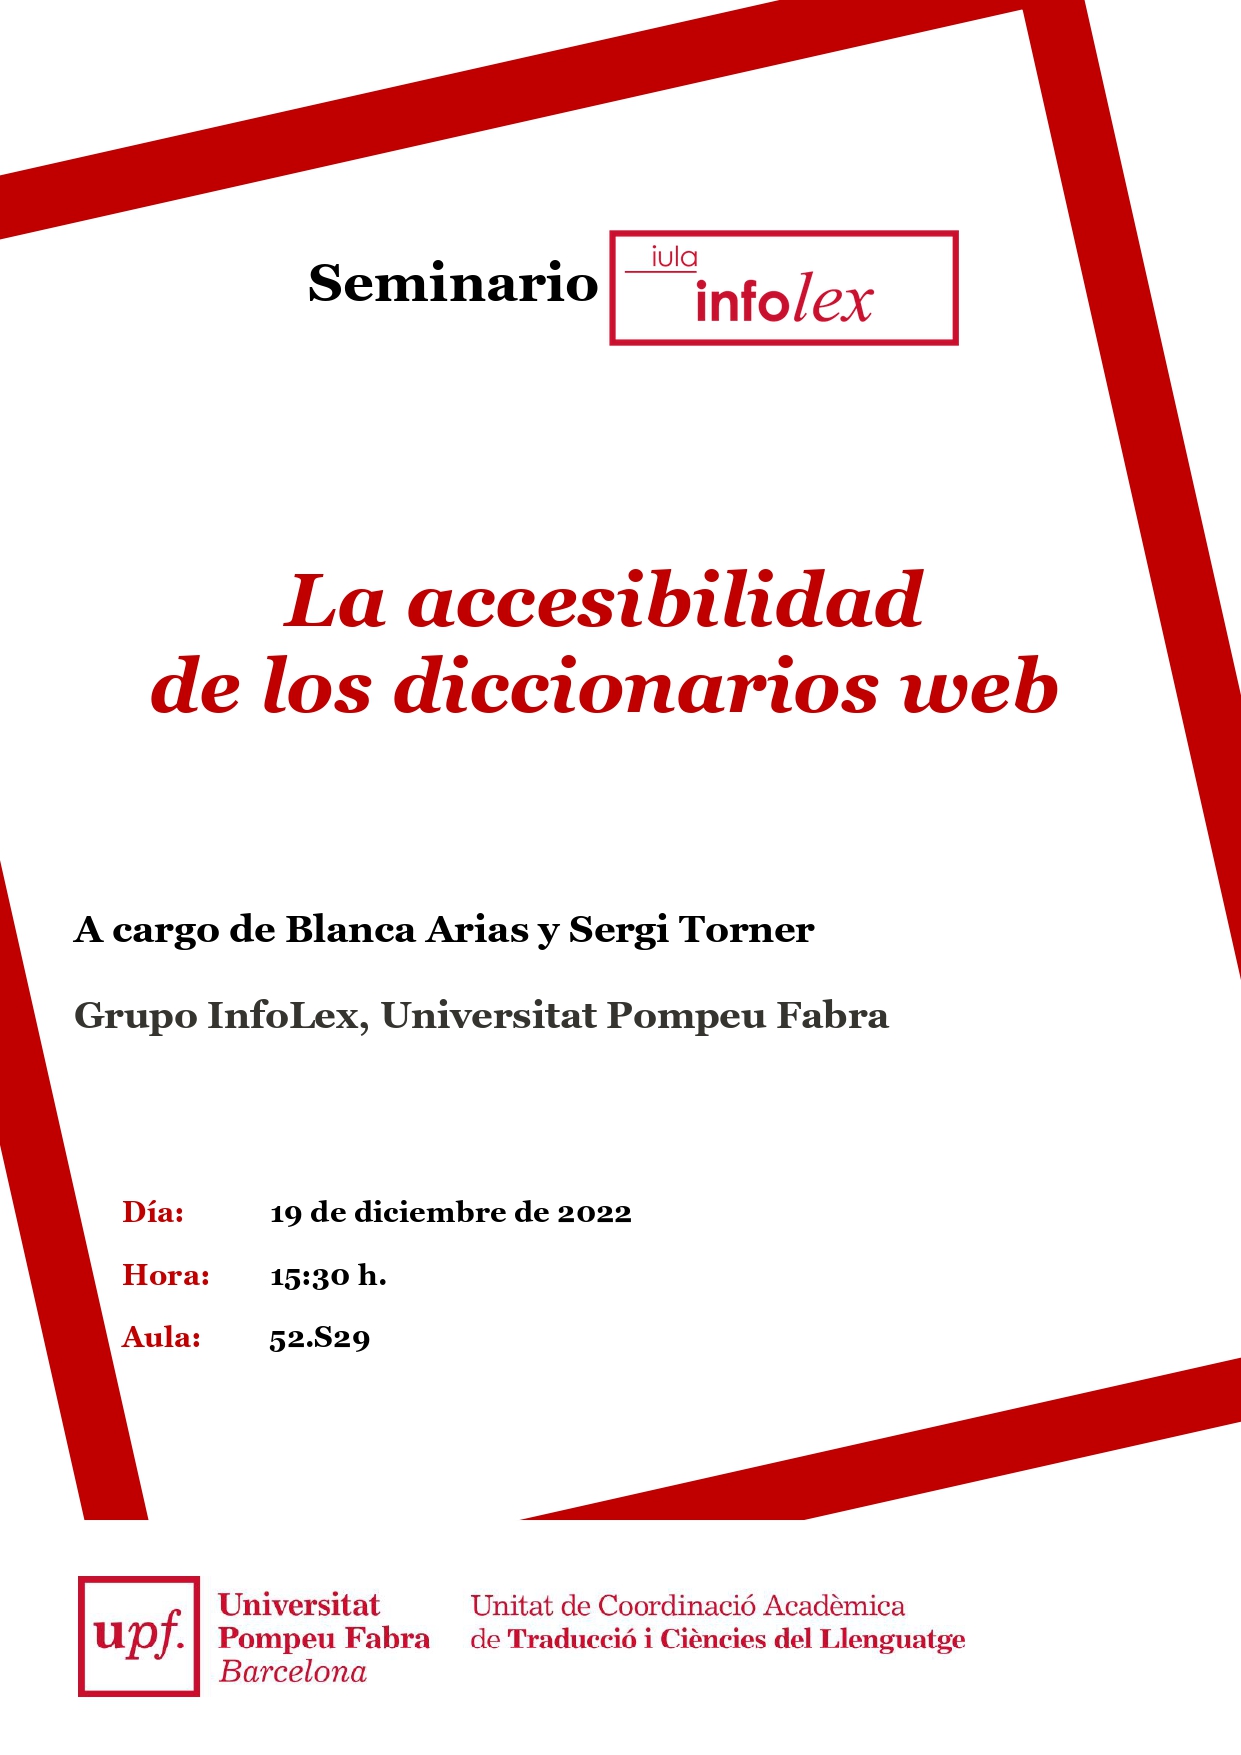 19/12/2022 Seminari del grup InfoLex, a càrrec de Blanca Arias i Sergi Torner